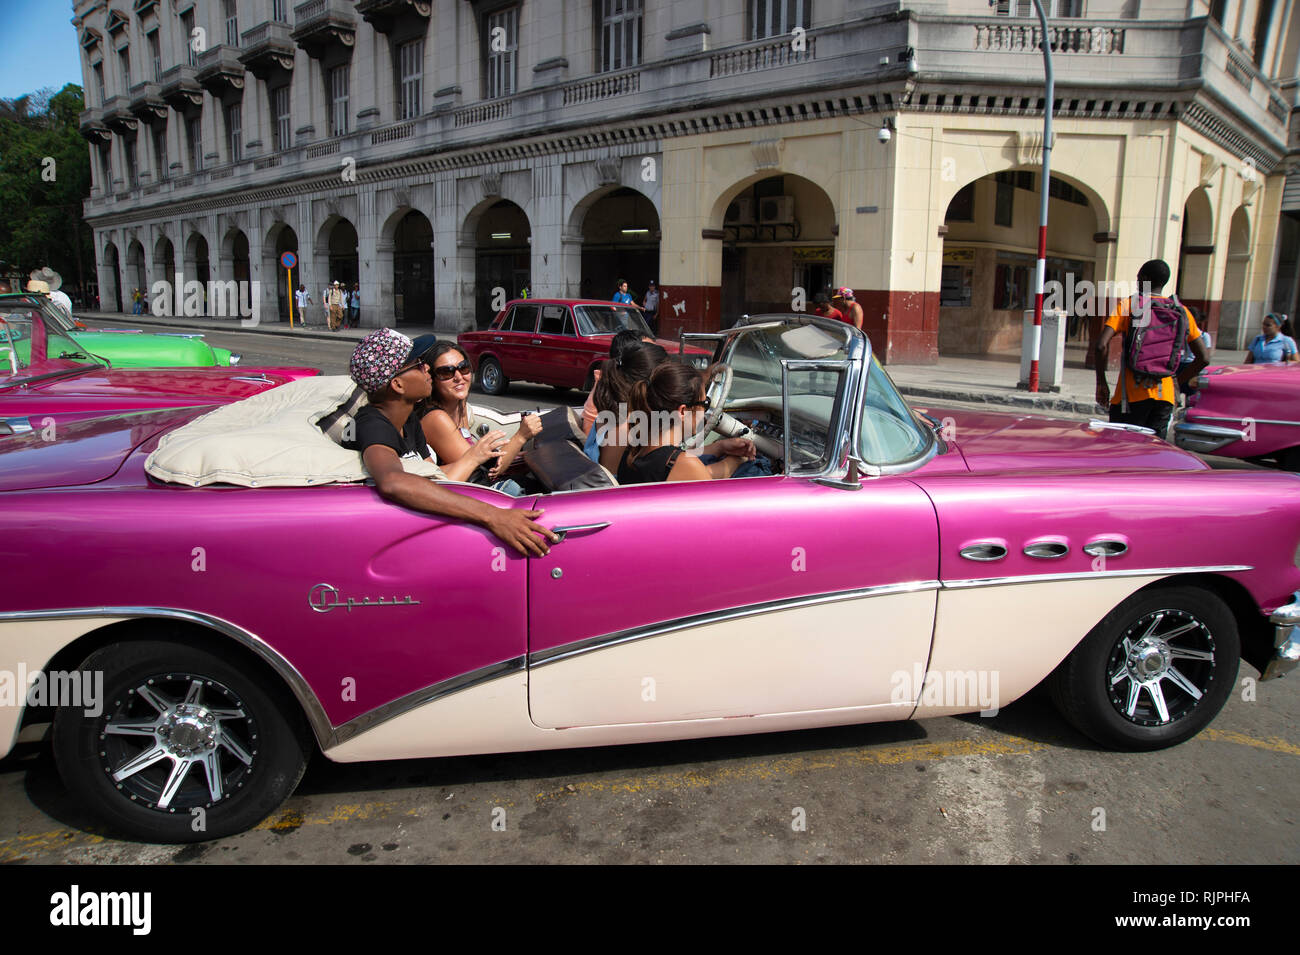 Touristen, die einen kühlen Taxifahrt in einem restaurierten 1950er American Classic Auto auf den Straßen von Havanna Vieja Kuba Stockfoto